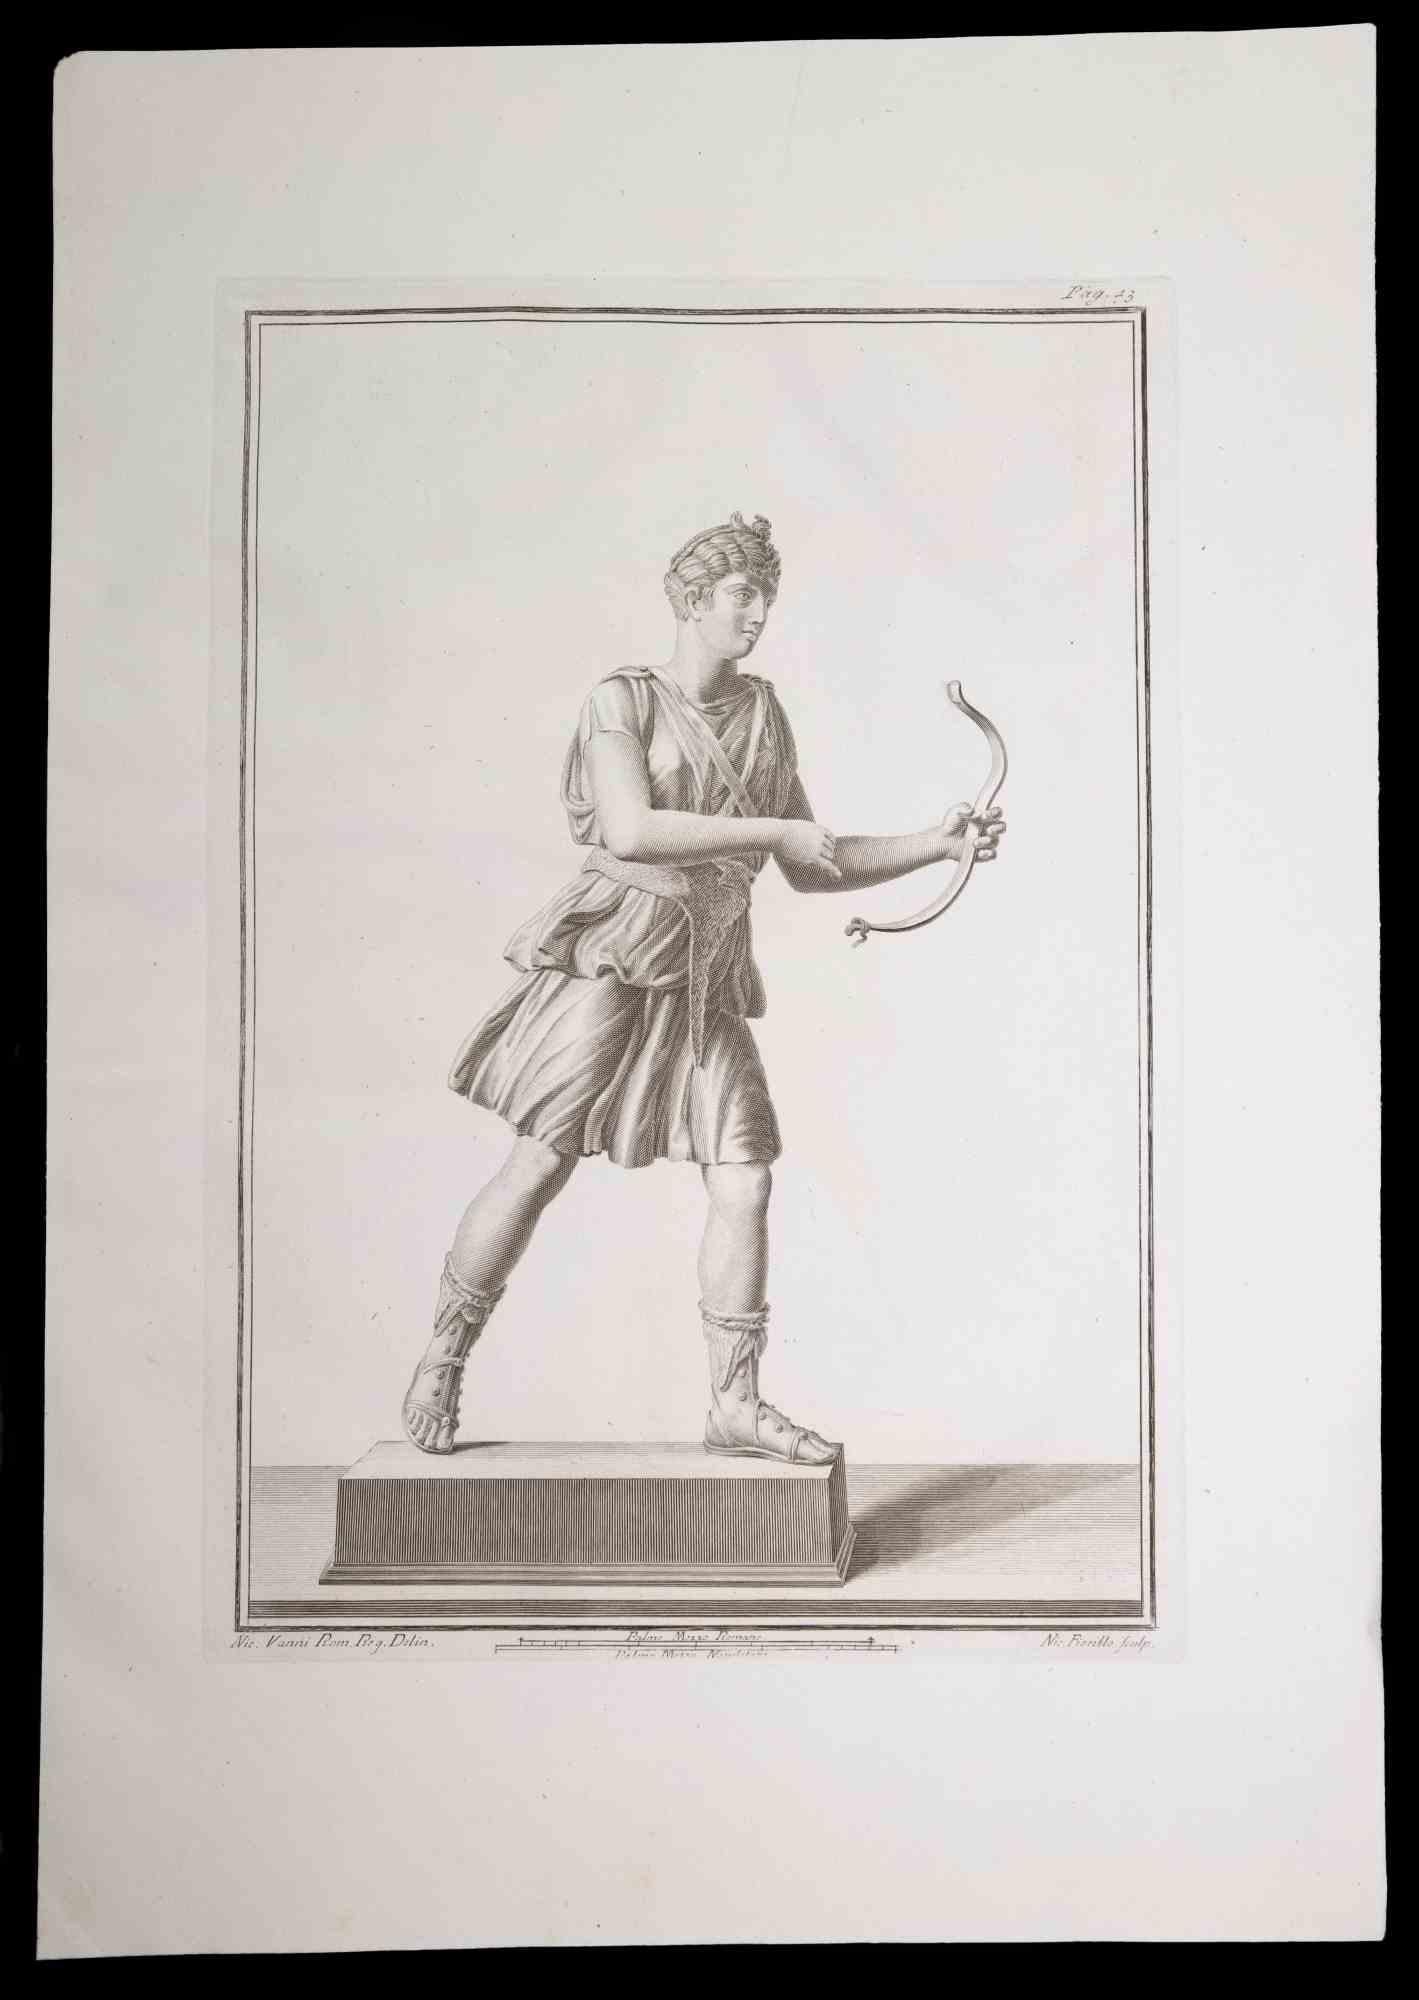 Bogenschütze, antike römische Statue, aus der Serie "Altertümer von Herculaneum", ist eine Originalradierung auf Papier von Nicola Fiorillo aus dem 18.

Signiert auf der Platte unten rechts.

Guter Zustand mit leichten Falten.

Die Radierung gehört